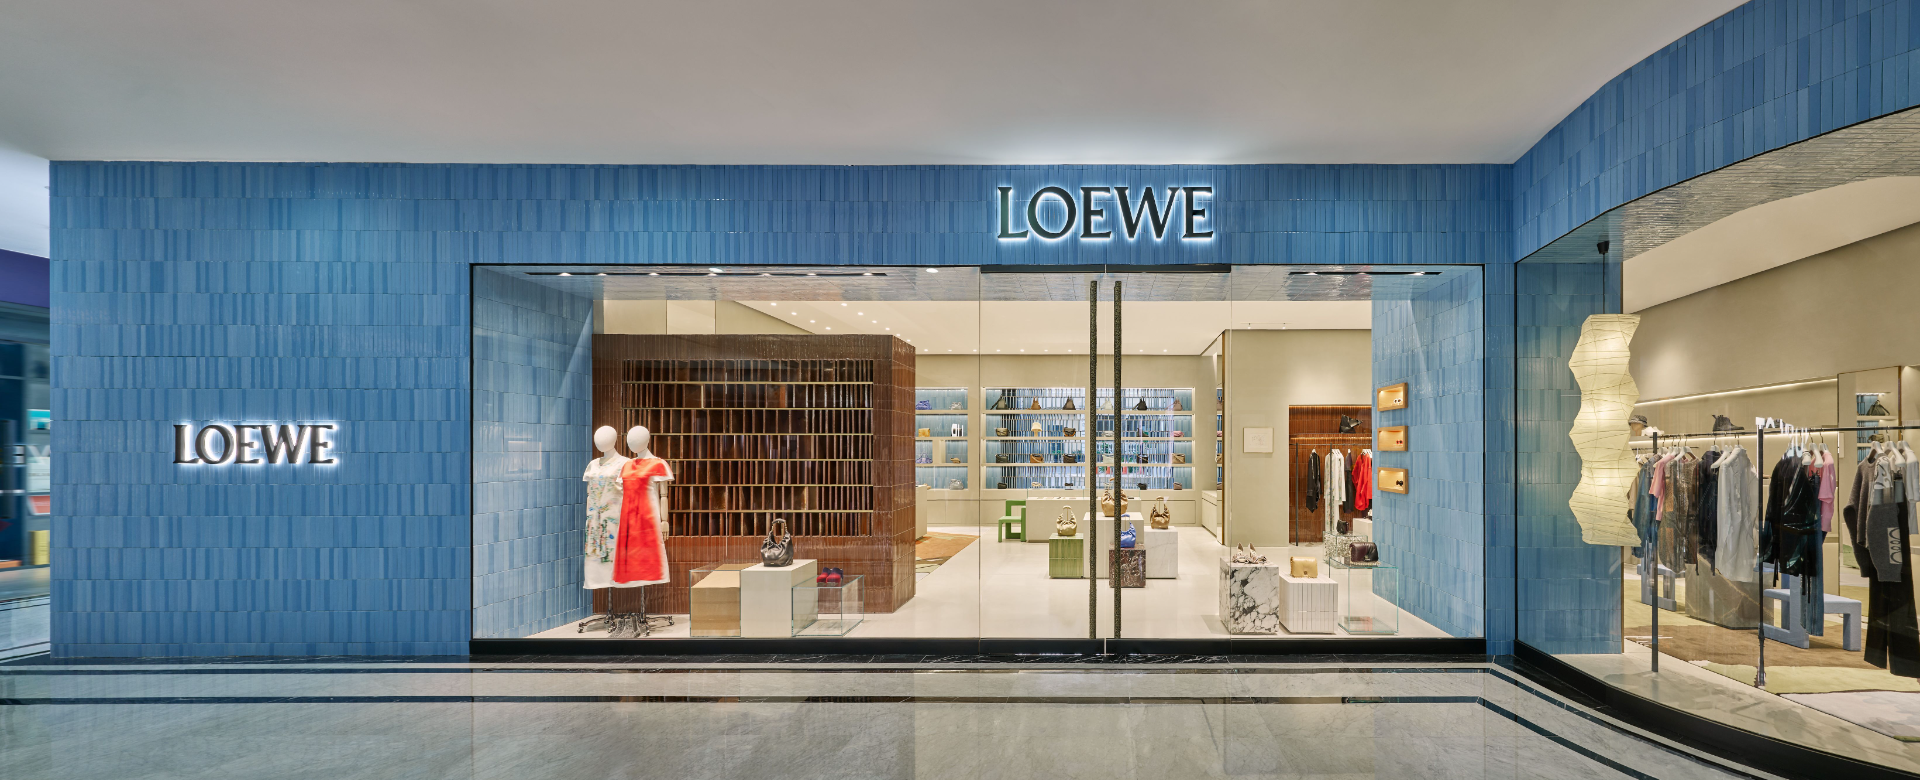 LOEWE ra mắt cửa hàng đầu tiên tại Việt Nam với kiến trúc độc đáo